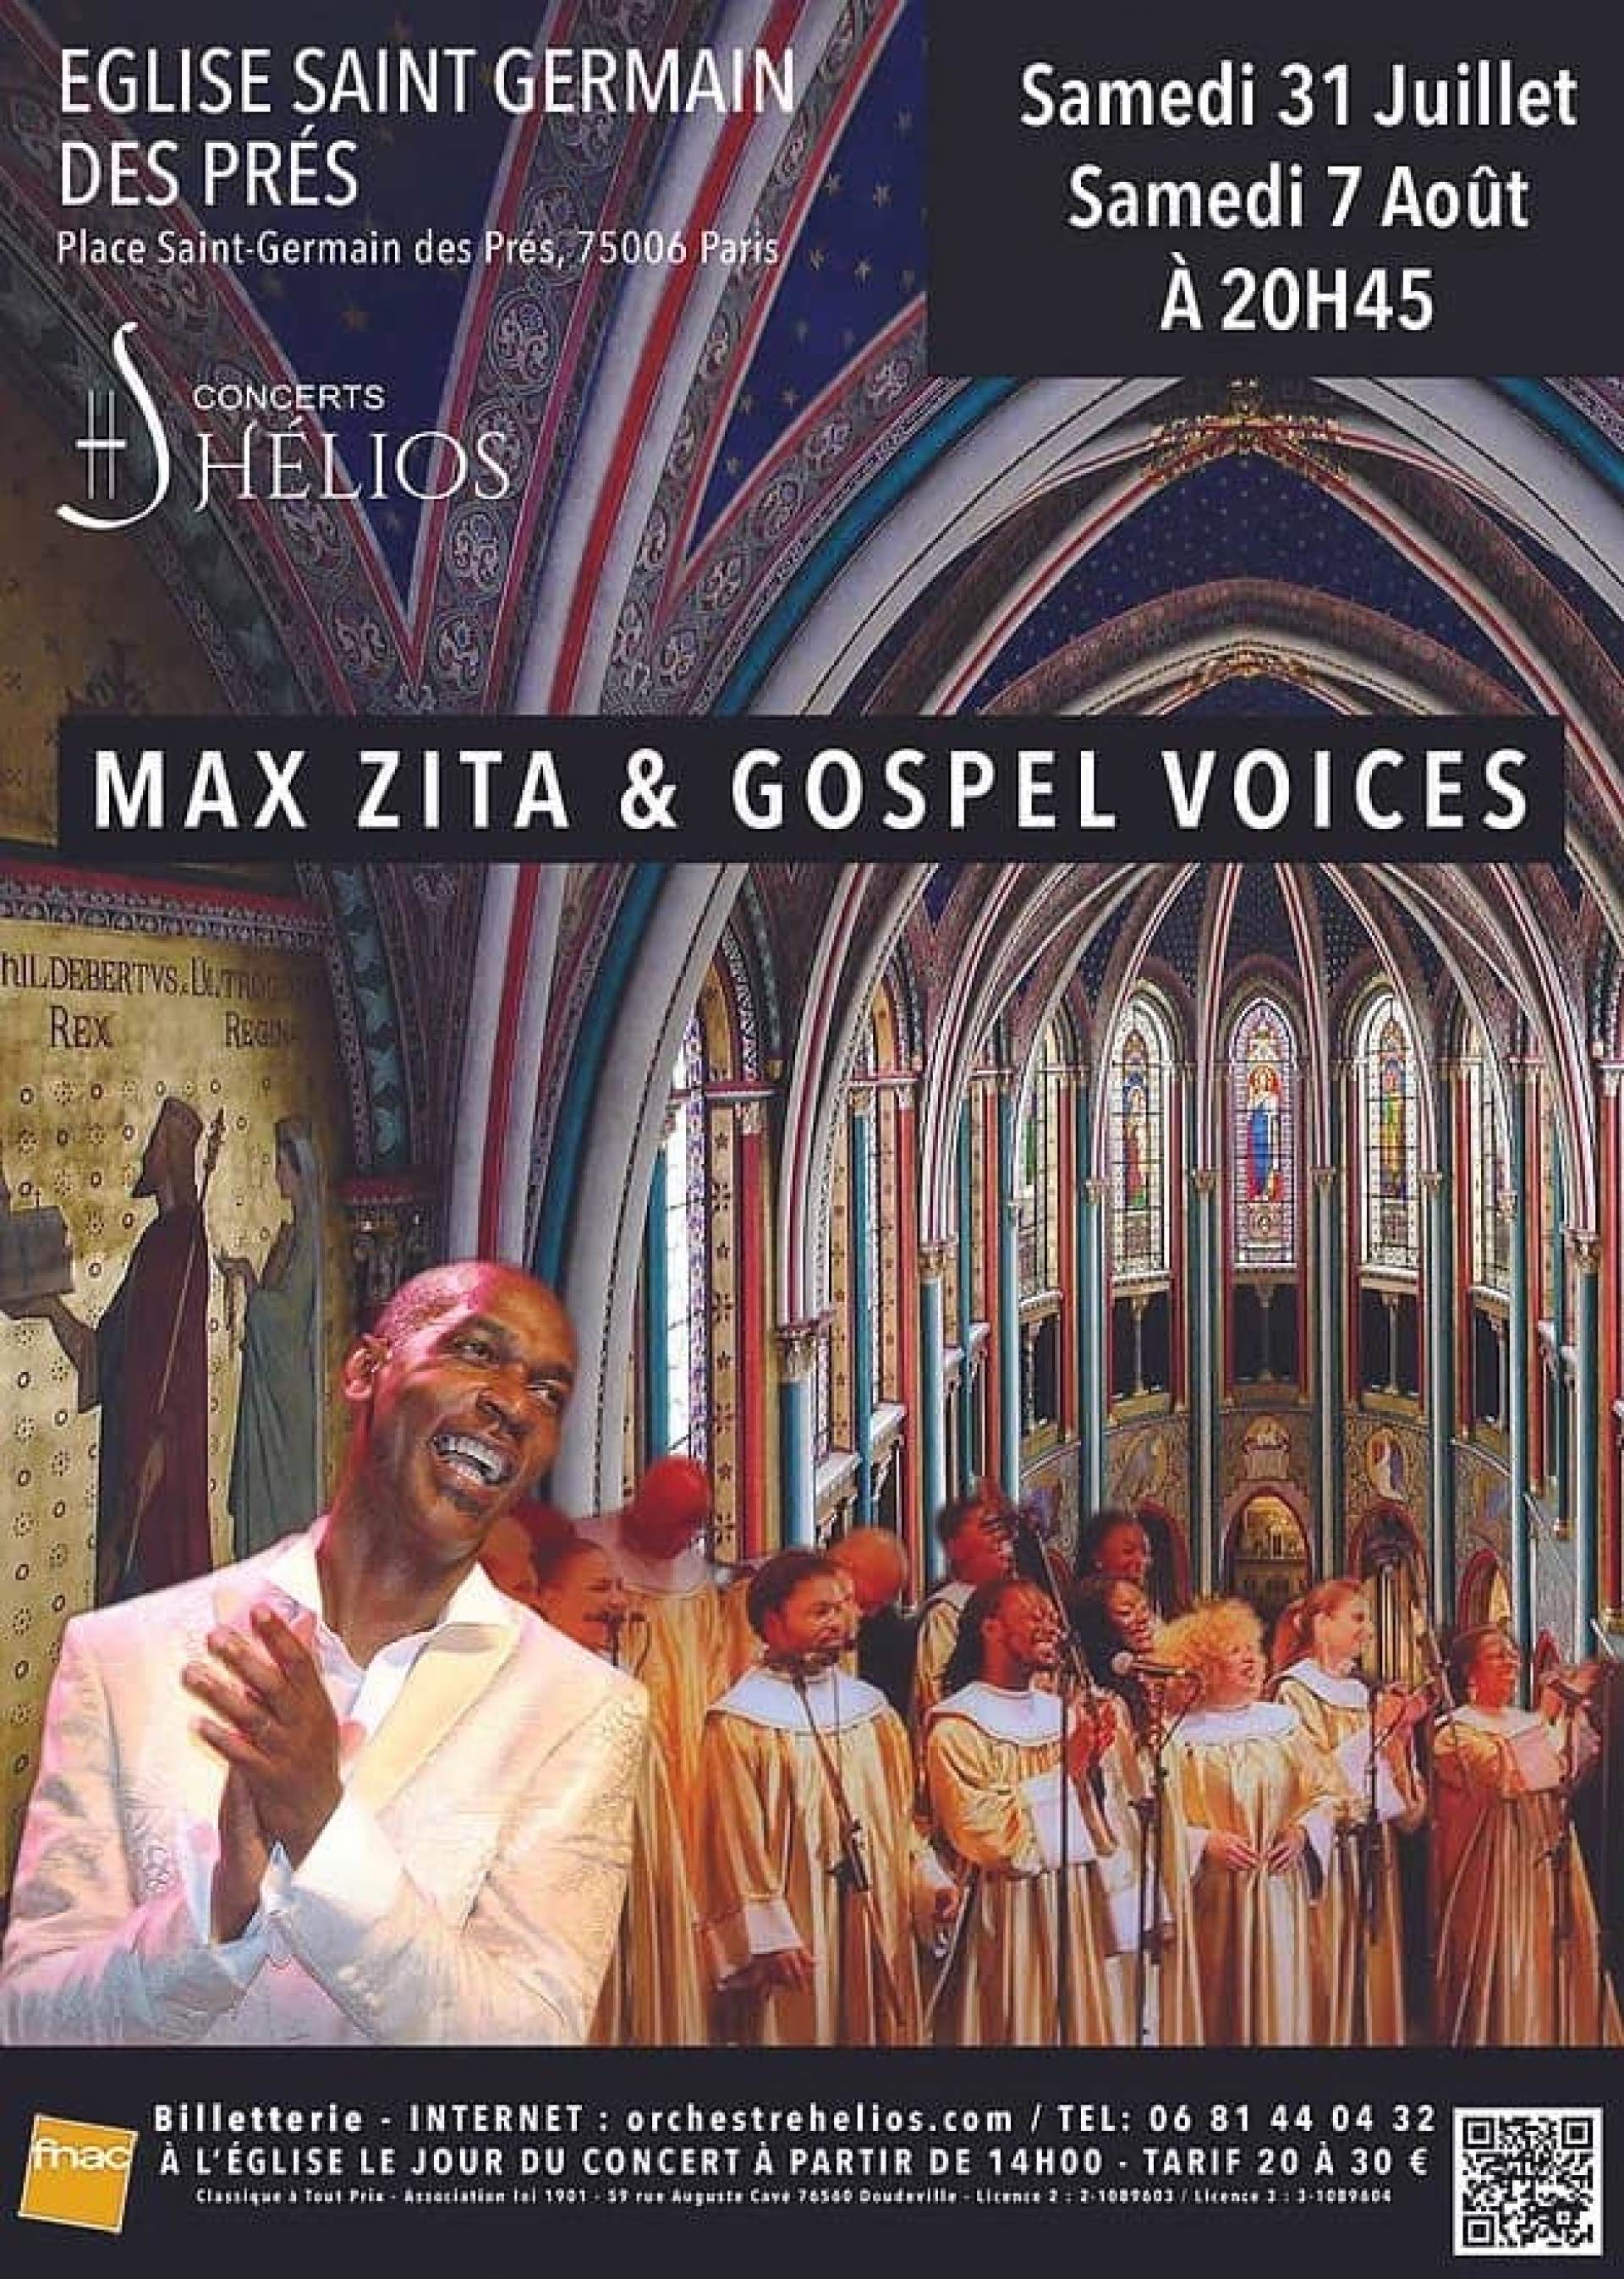 Max Zita & Gospel Voices